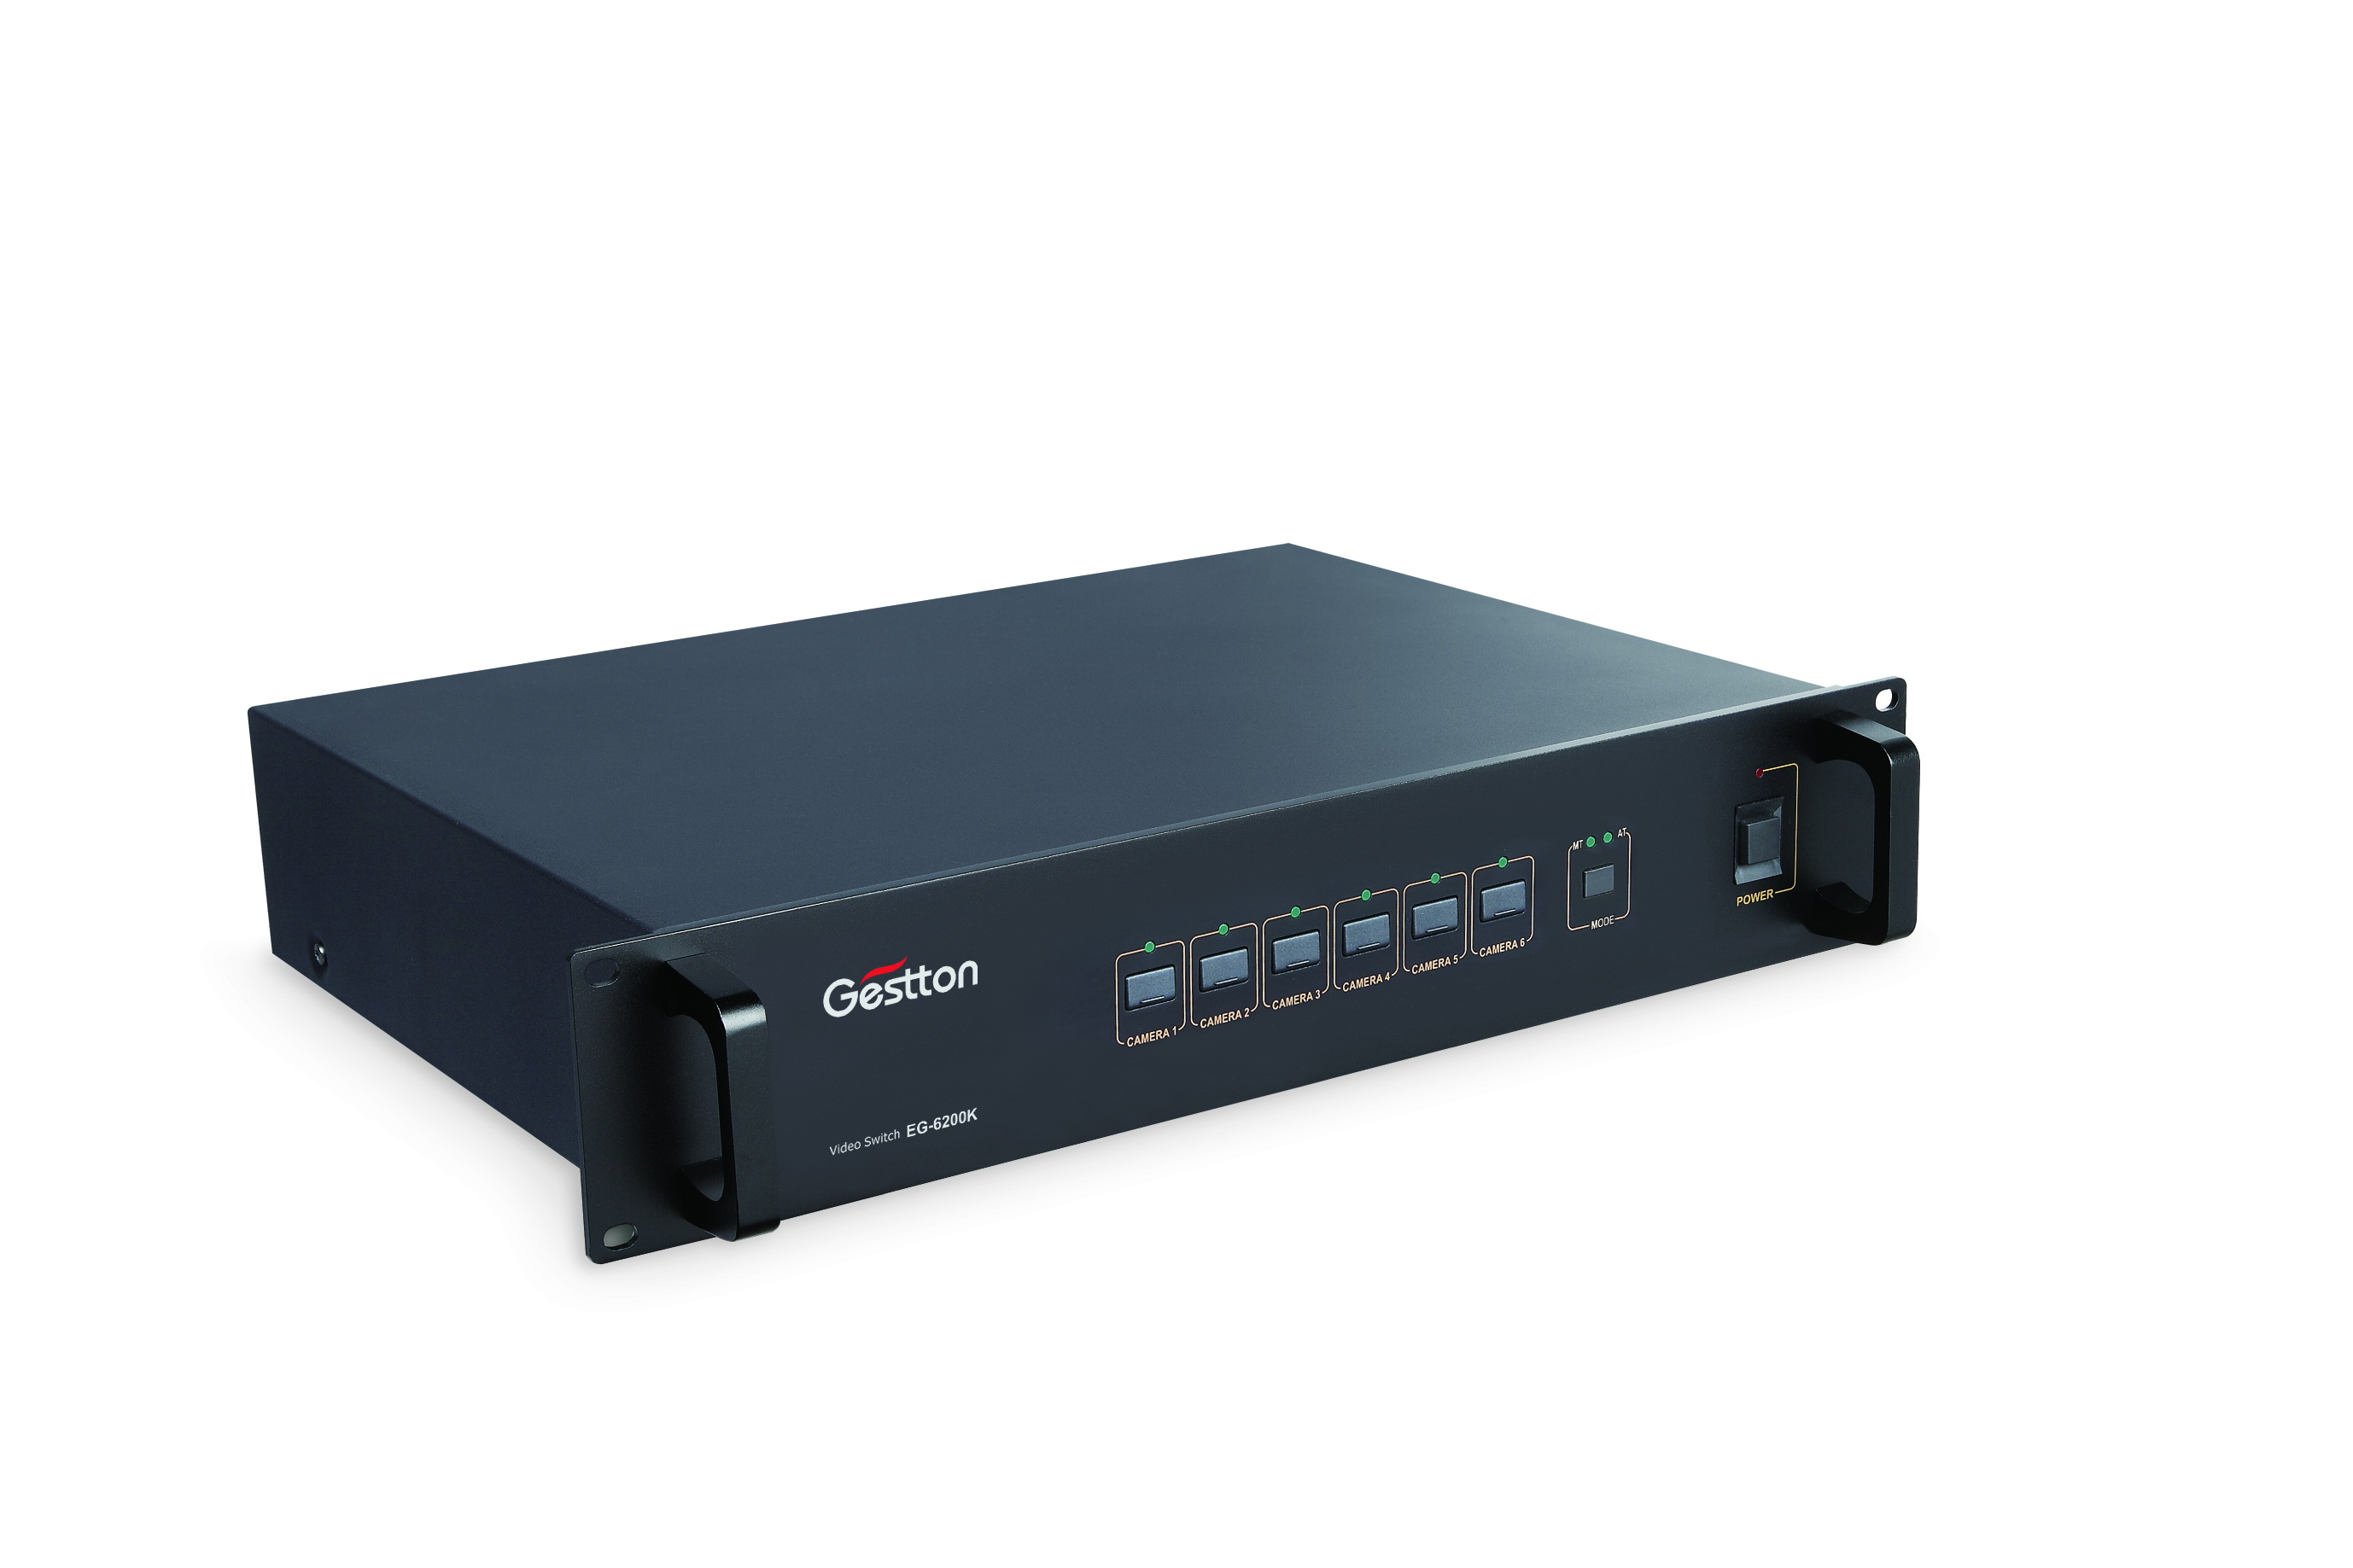 GESTTON -- EG-6200K (High definition Video Switch)